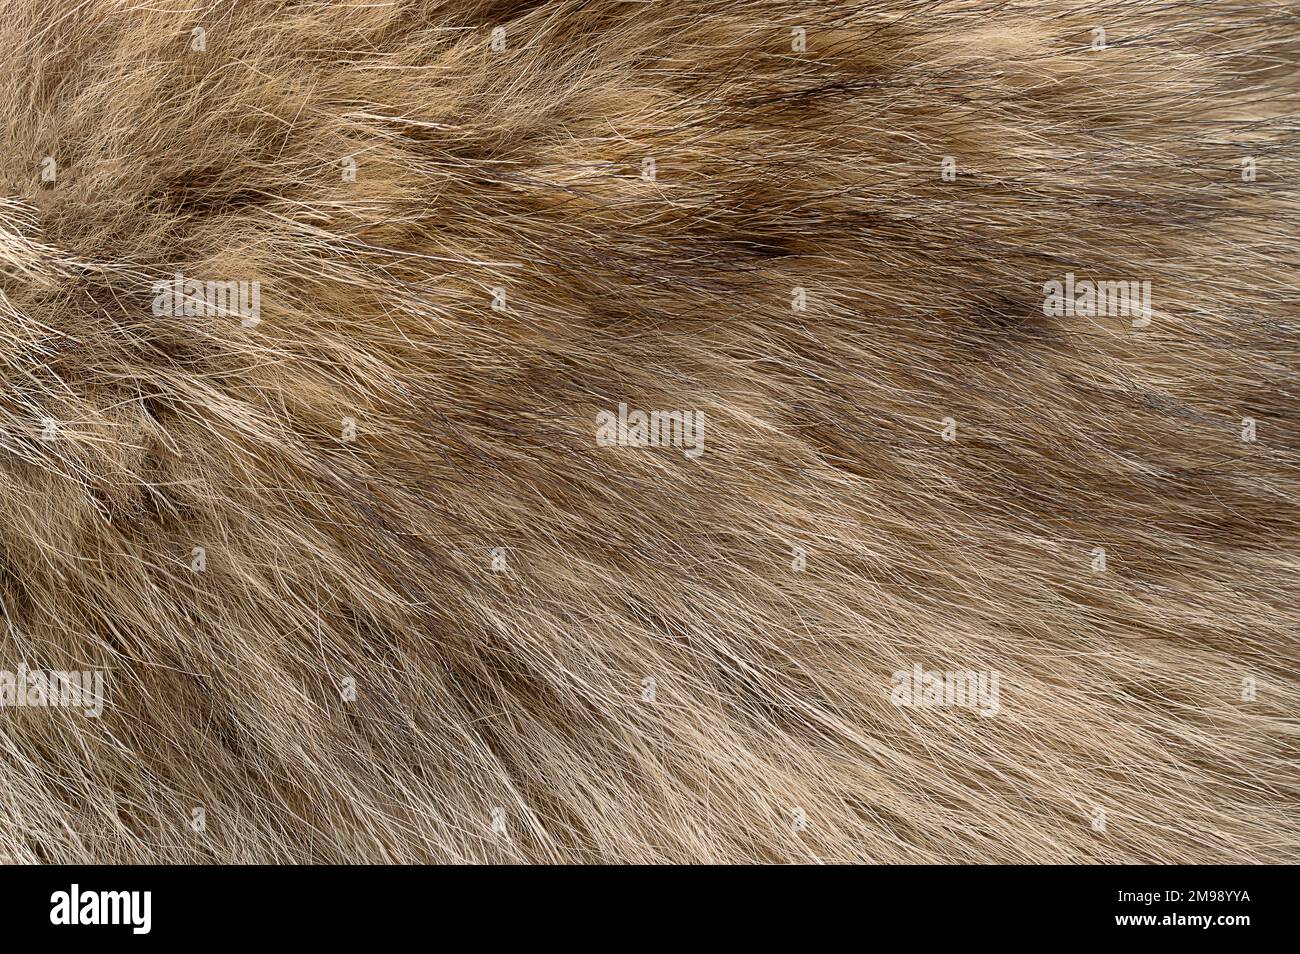 Echtes graues Wolfsfell, Oberfläche. Wolfspelz mit seidigen, flauschigen und buschigen Pelzfasern, hauptsächlich für Schals. Dickes Haarwachstum, das graue Wölfe bedeckt. Stockfoto